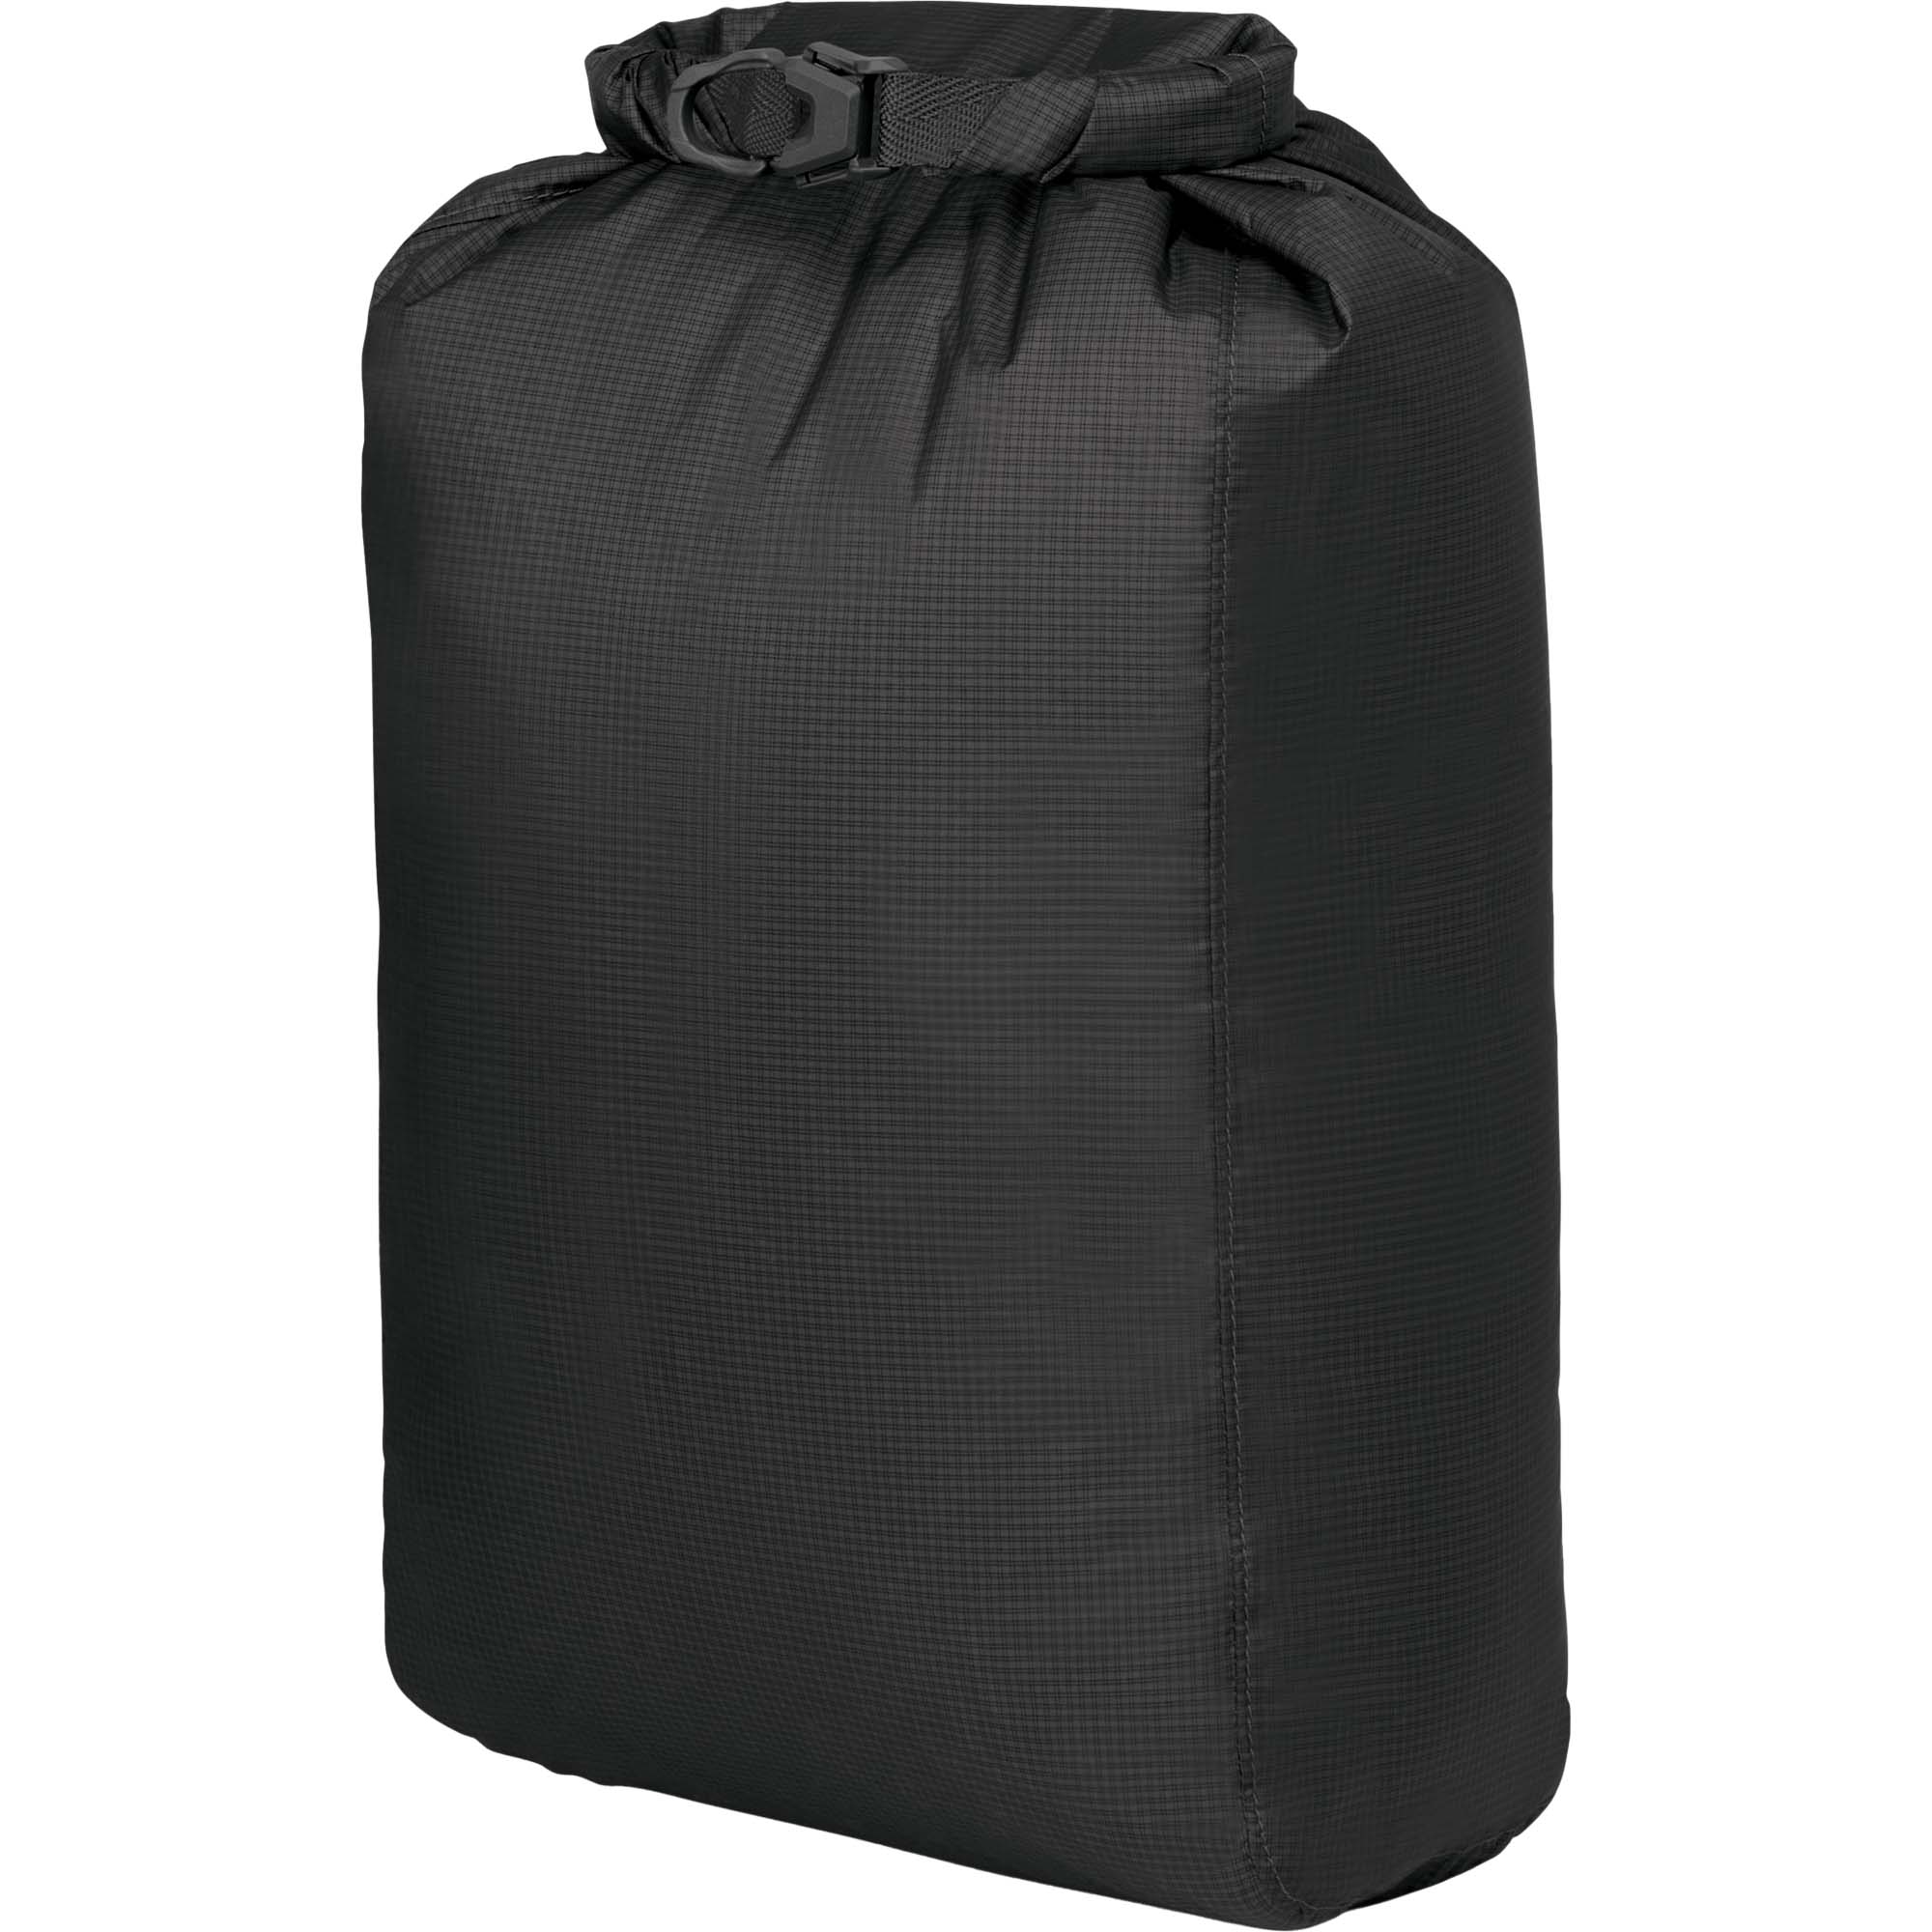 Osprey Ultralight Drysack 12 Waterproof Gear Bag